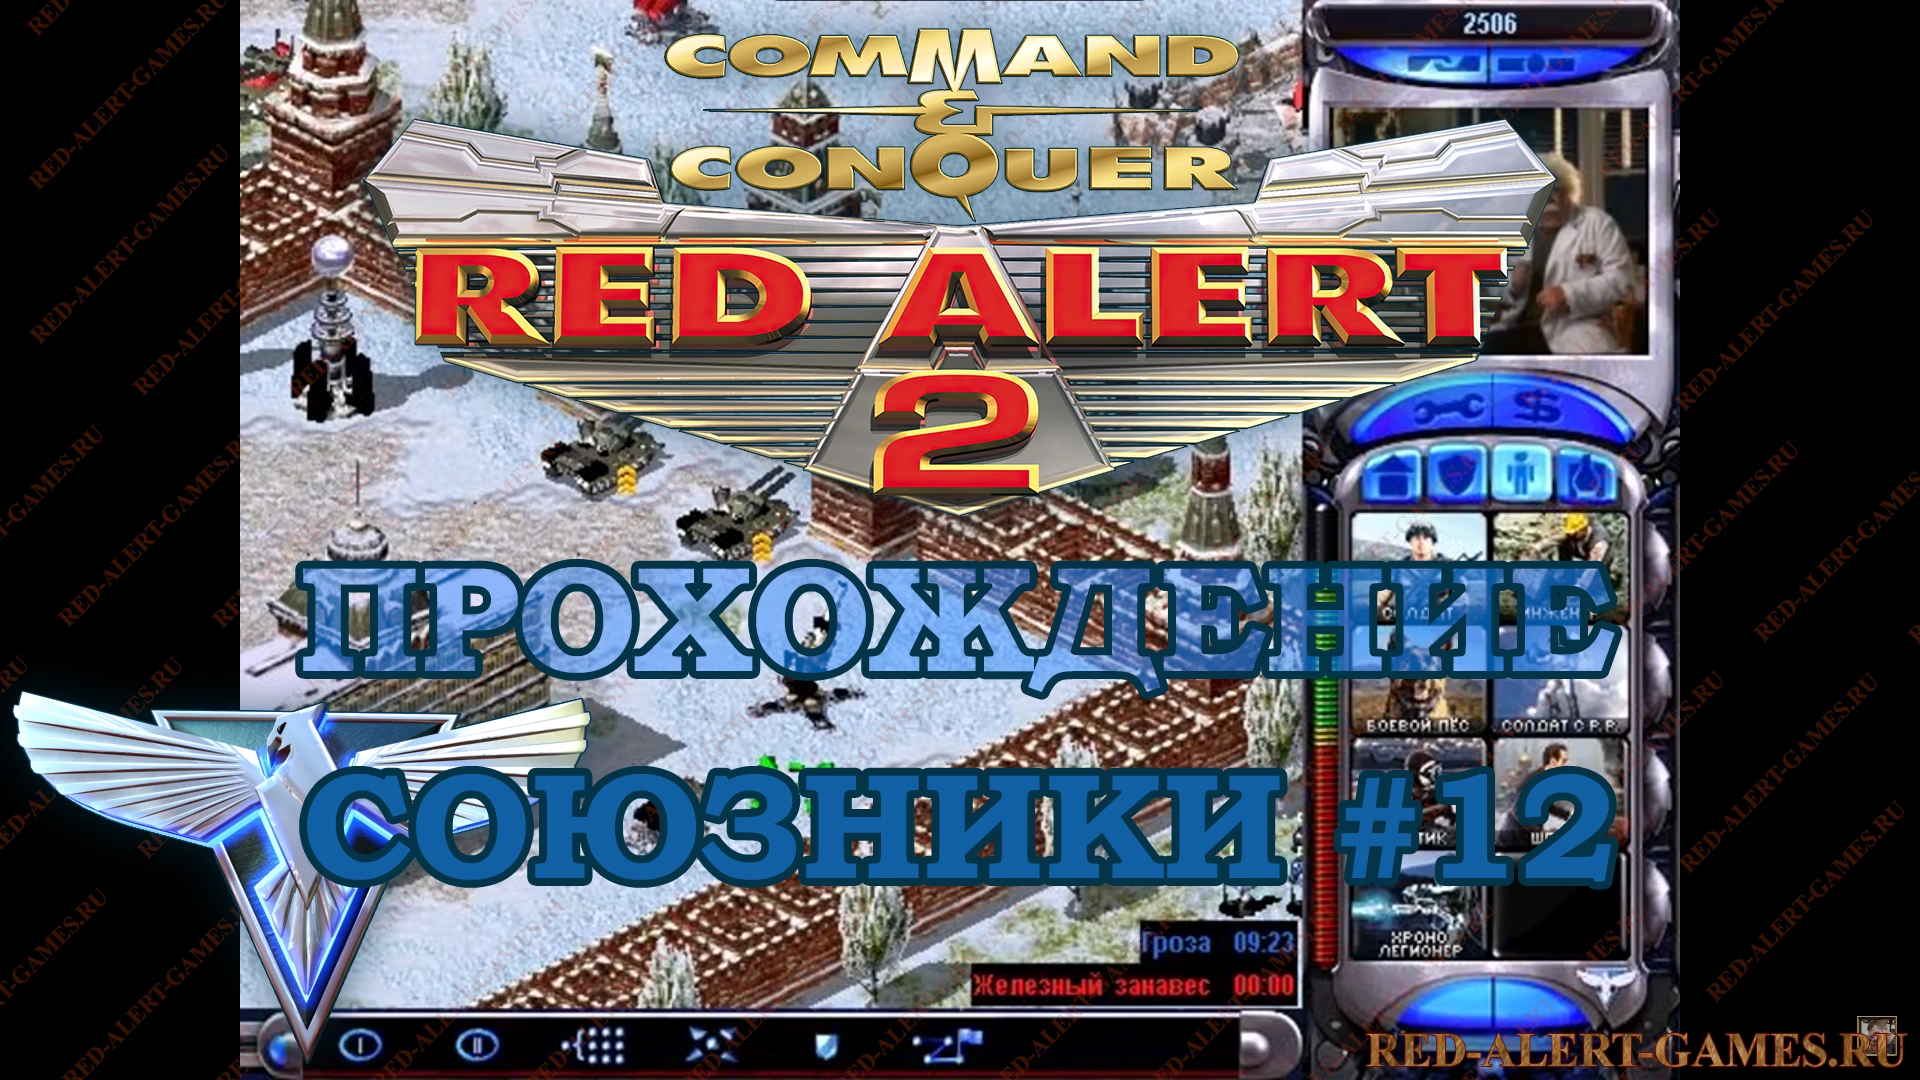 Red Alert 2 Прохождение Союзники - Миссия 12. Хроношторм (Chrono Storm)